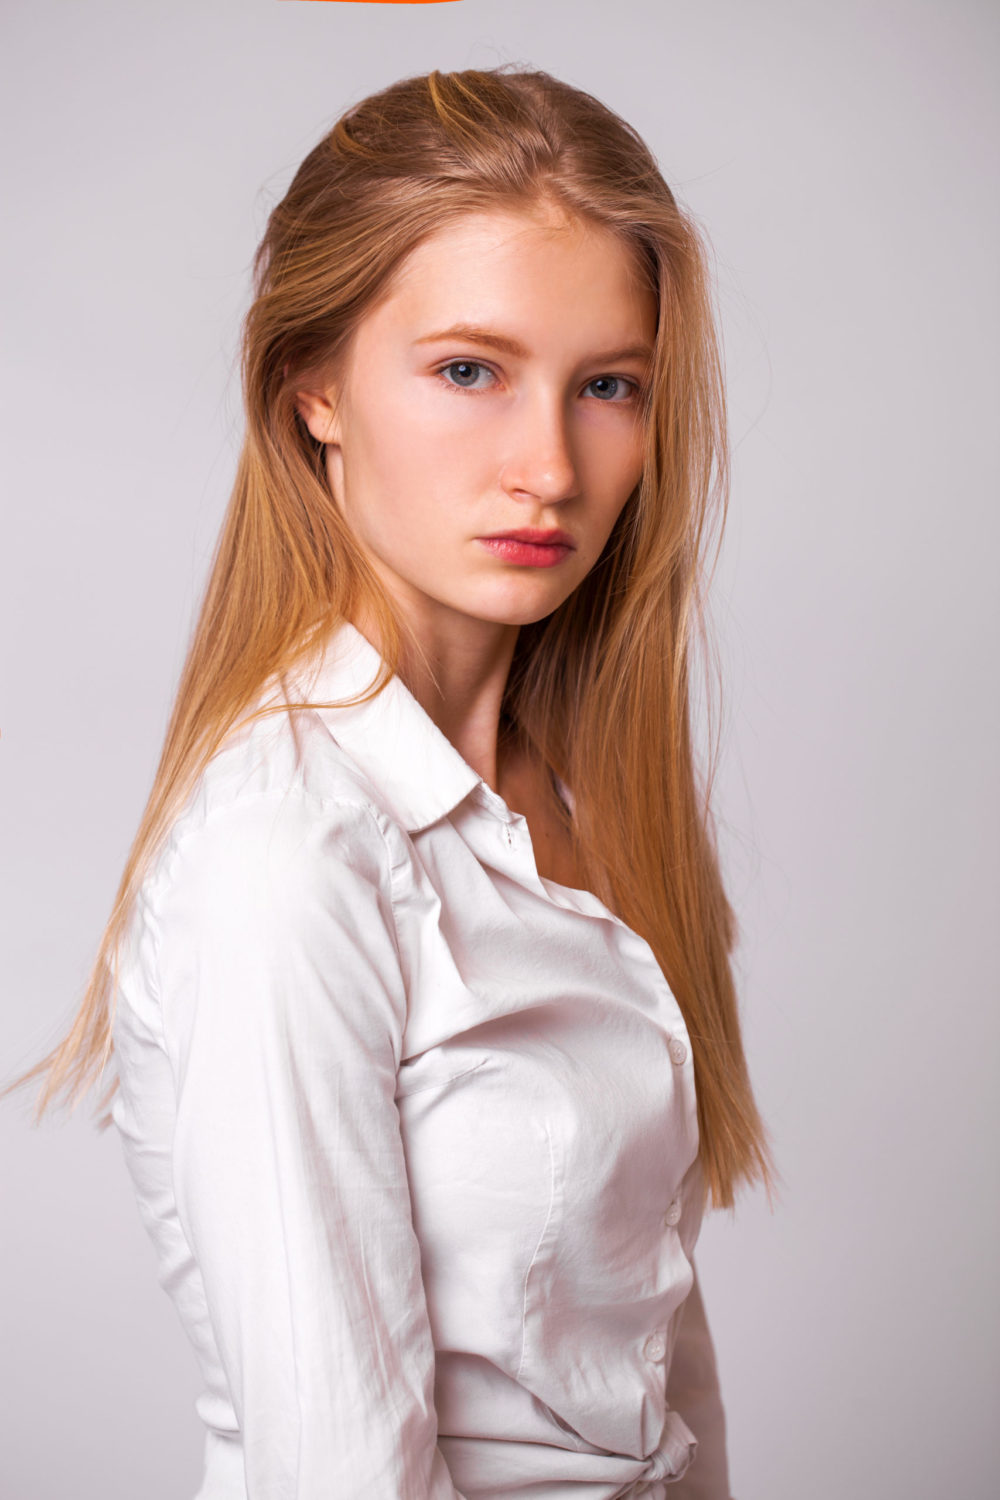 Donker Koper Blond haar op een vrouw in een wit button-up shirt